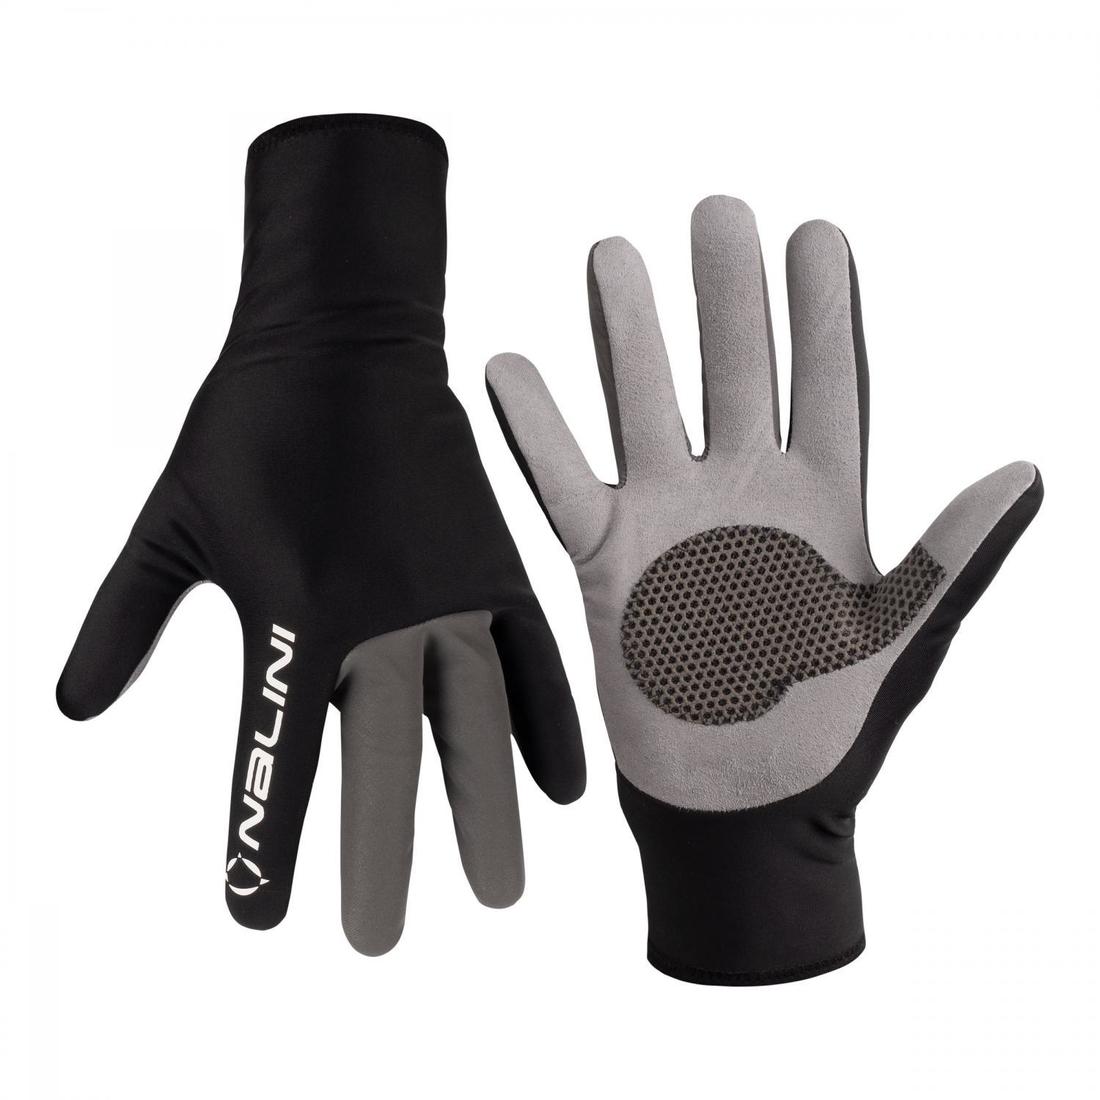 203504 zimne cyklisticke rukavice nalini reflex winter gloves.jpg1